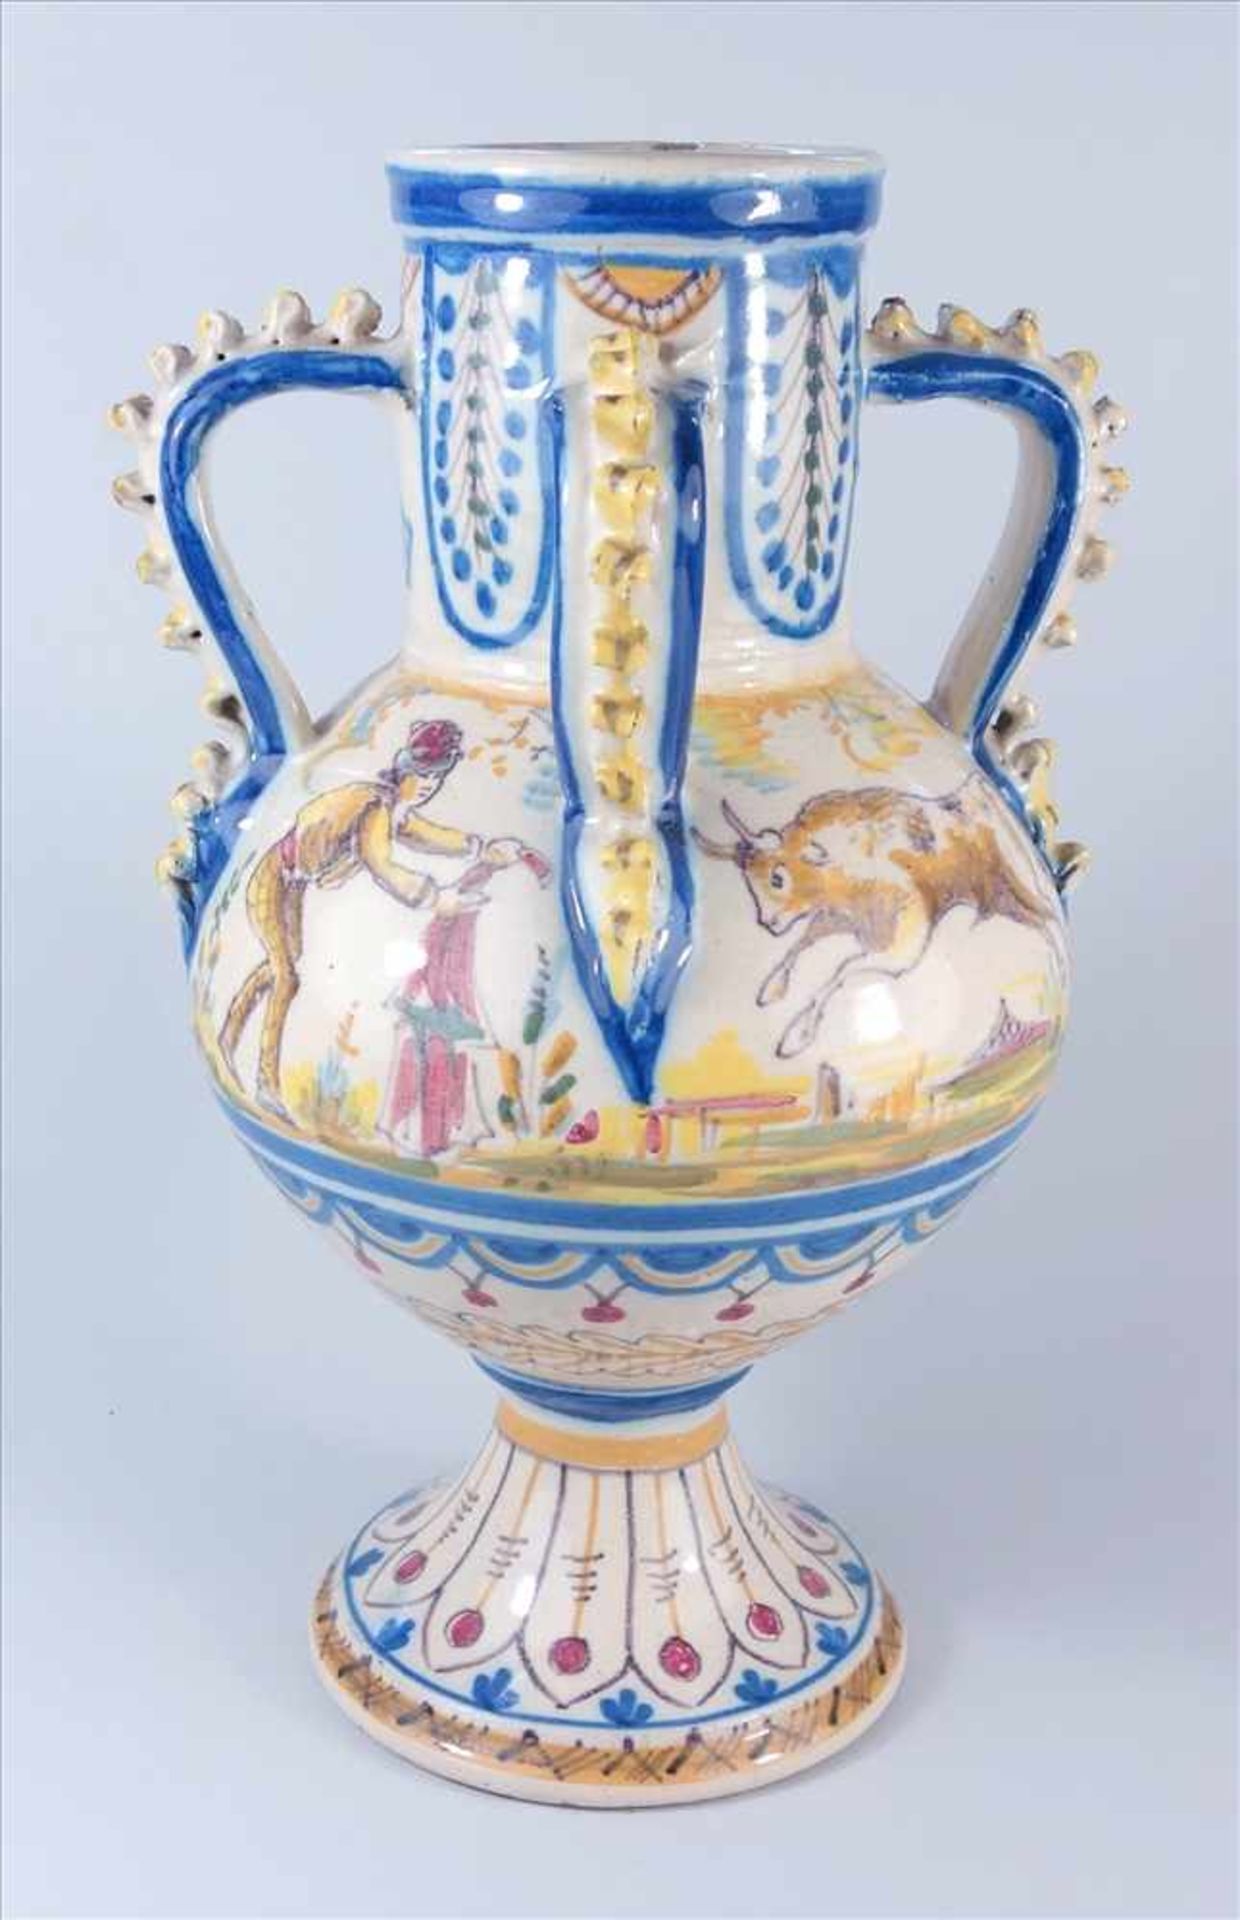 Vierhenkel-Vase, Spanien, 19.Jh., Fayence, Henkel mit aufgearbeiteten Wellenbändern, zylindrische